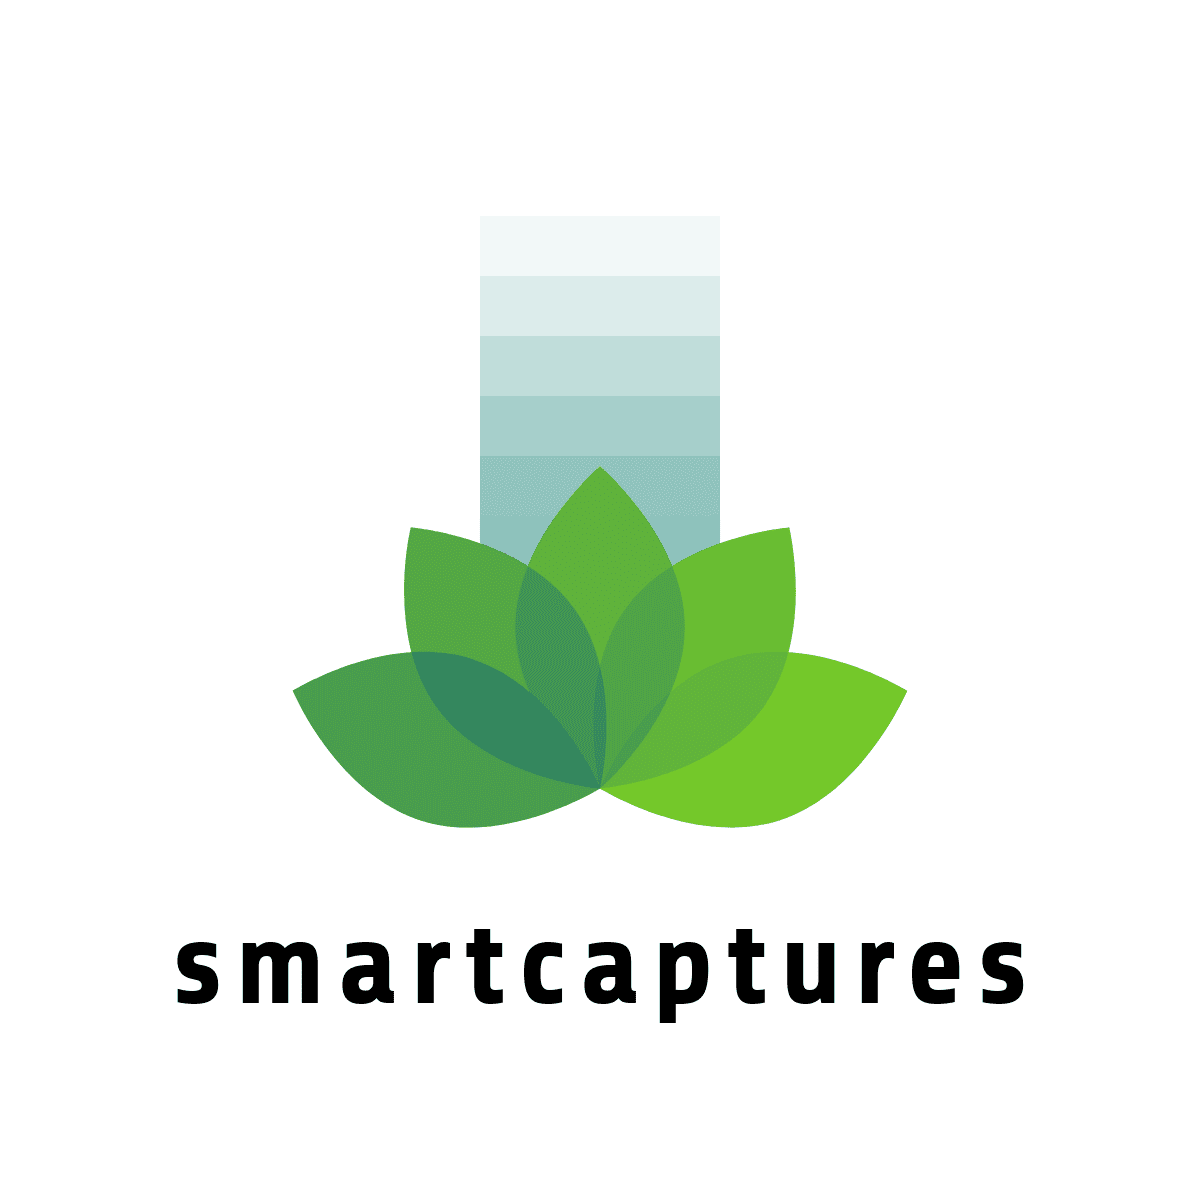 Smartcaptures